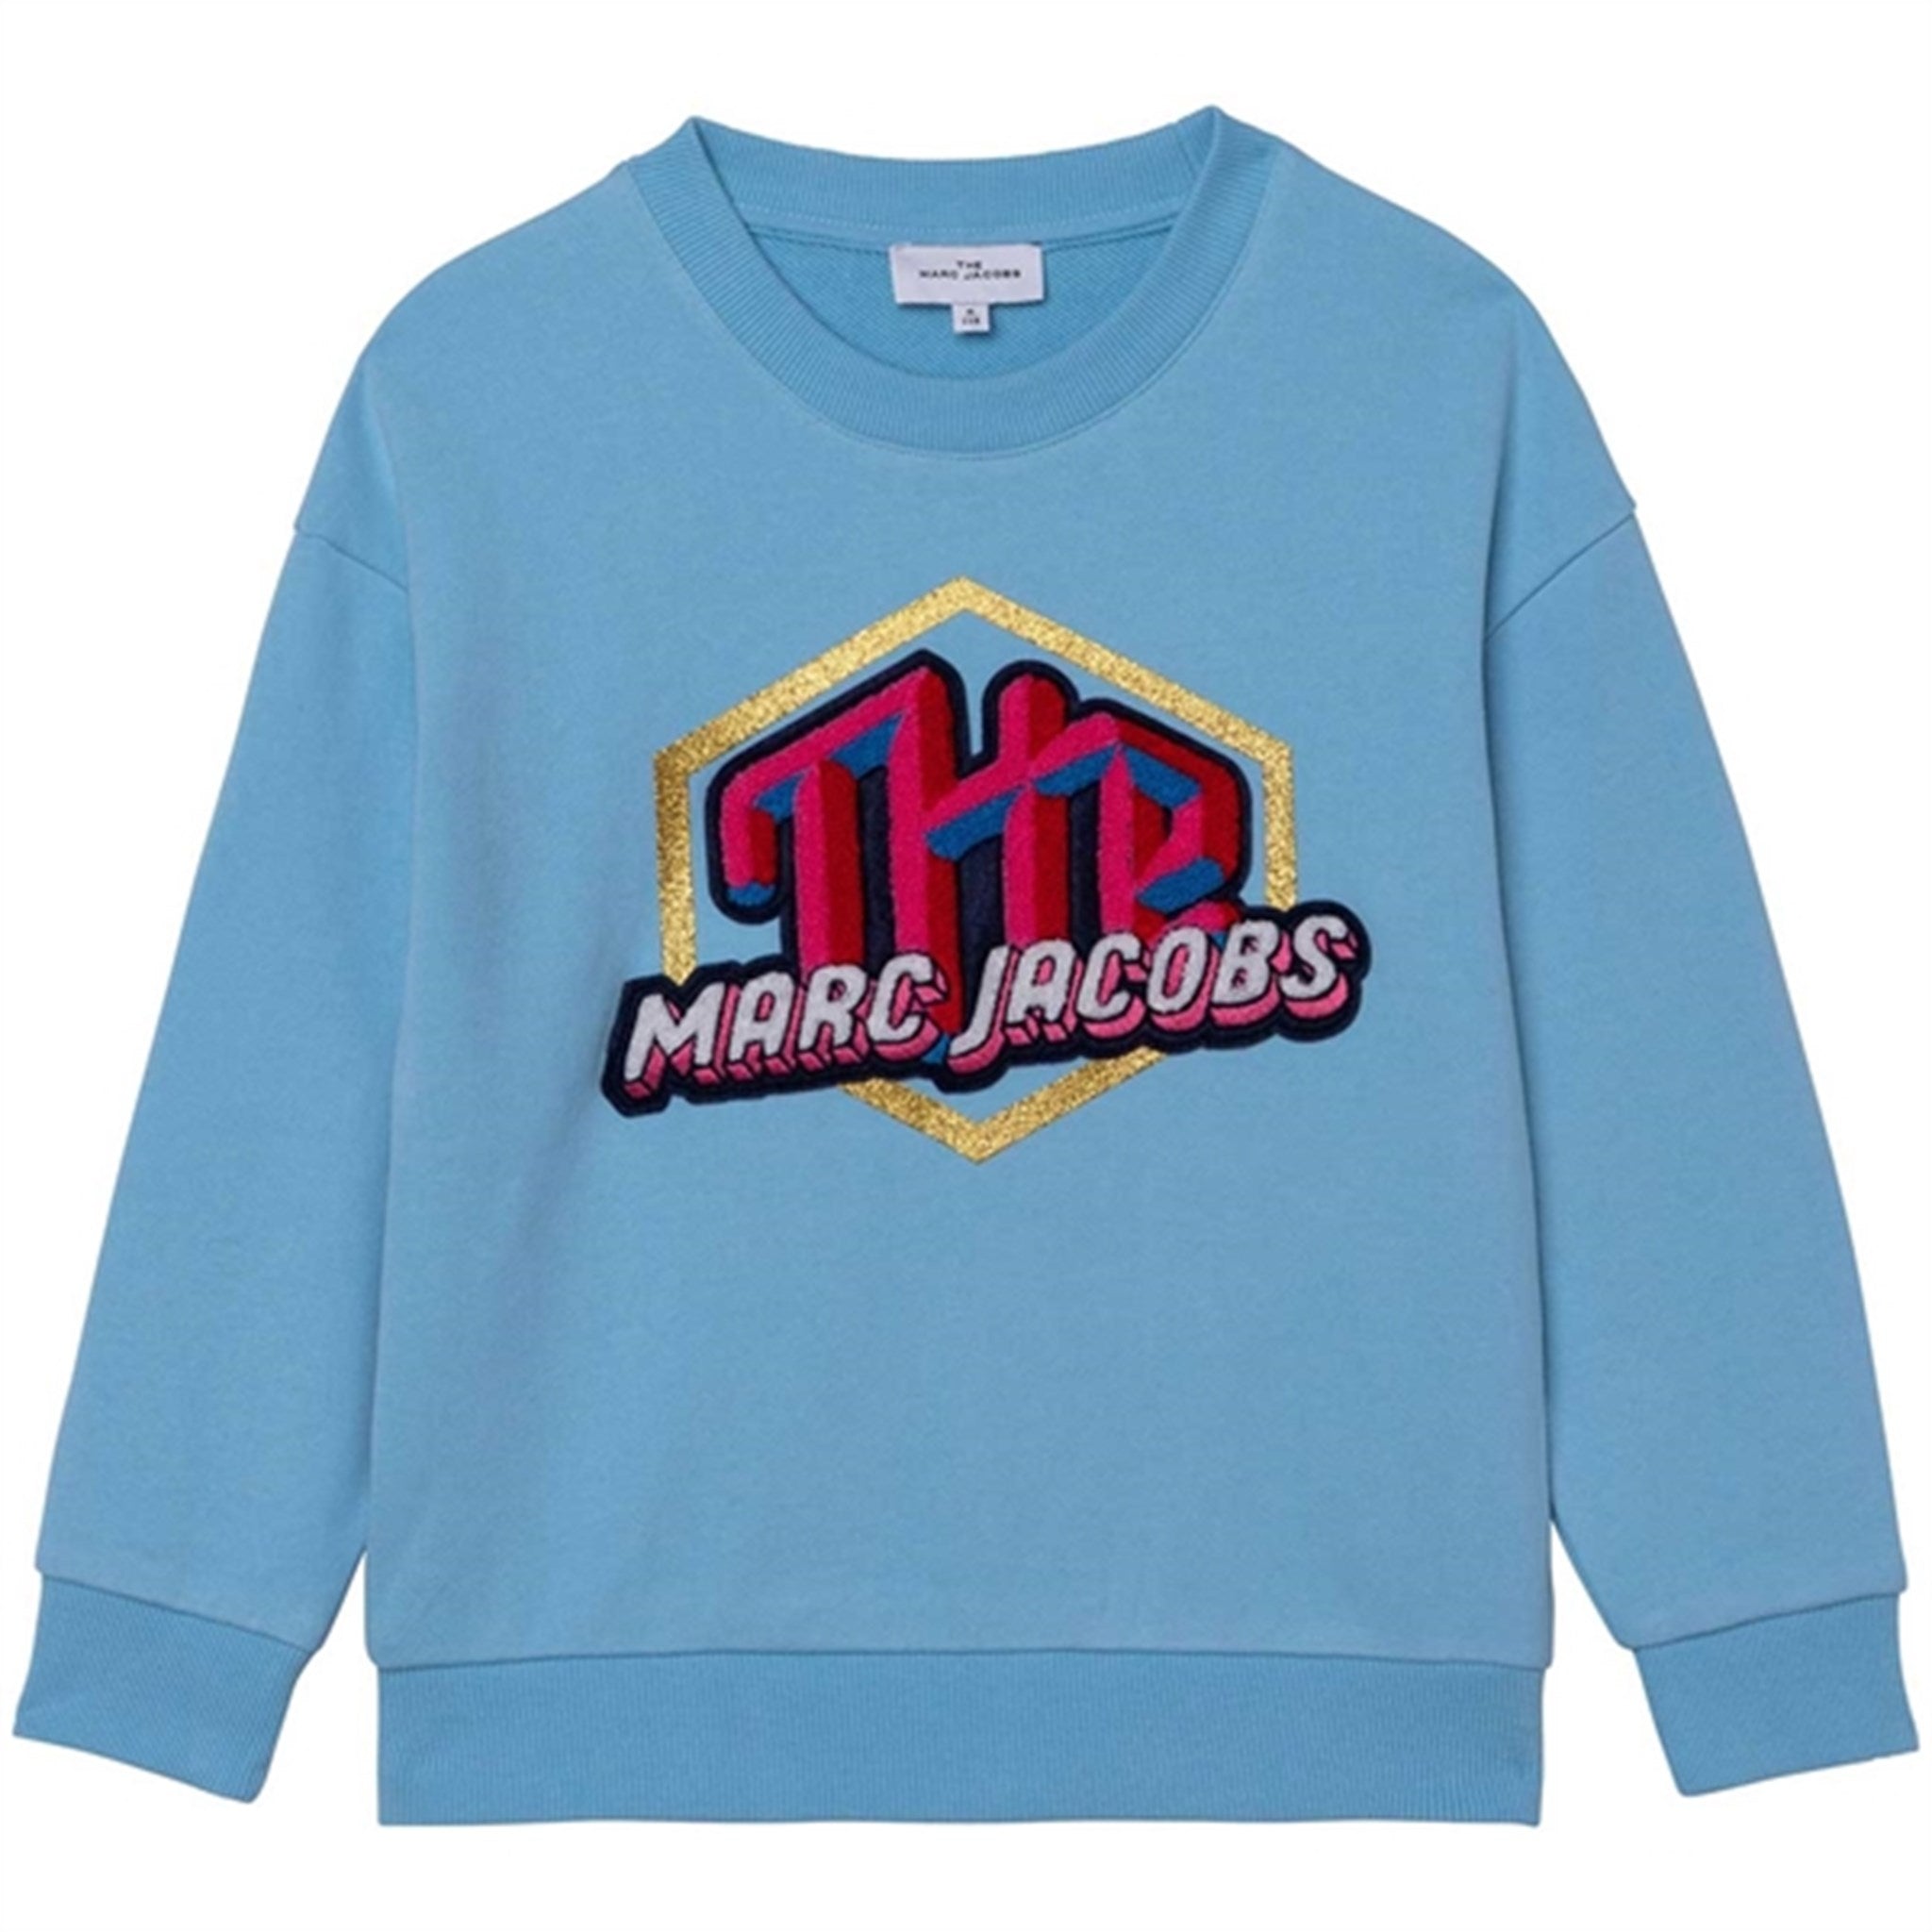 Little Marc Jacobs Sweatshirt Turquoise